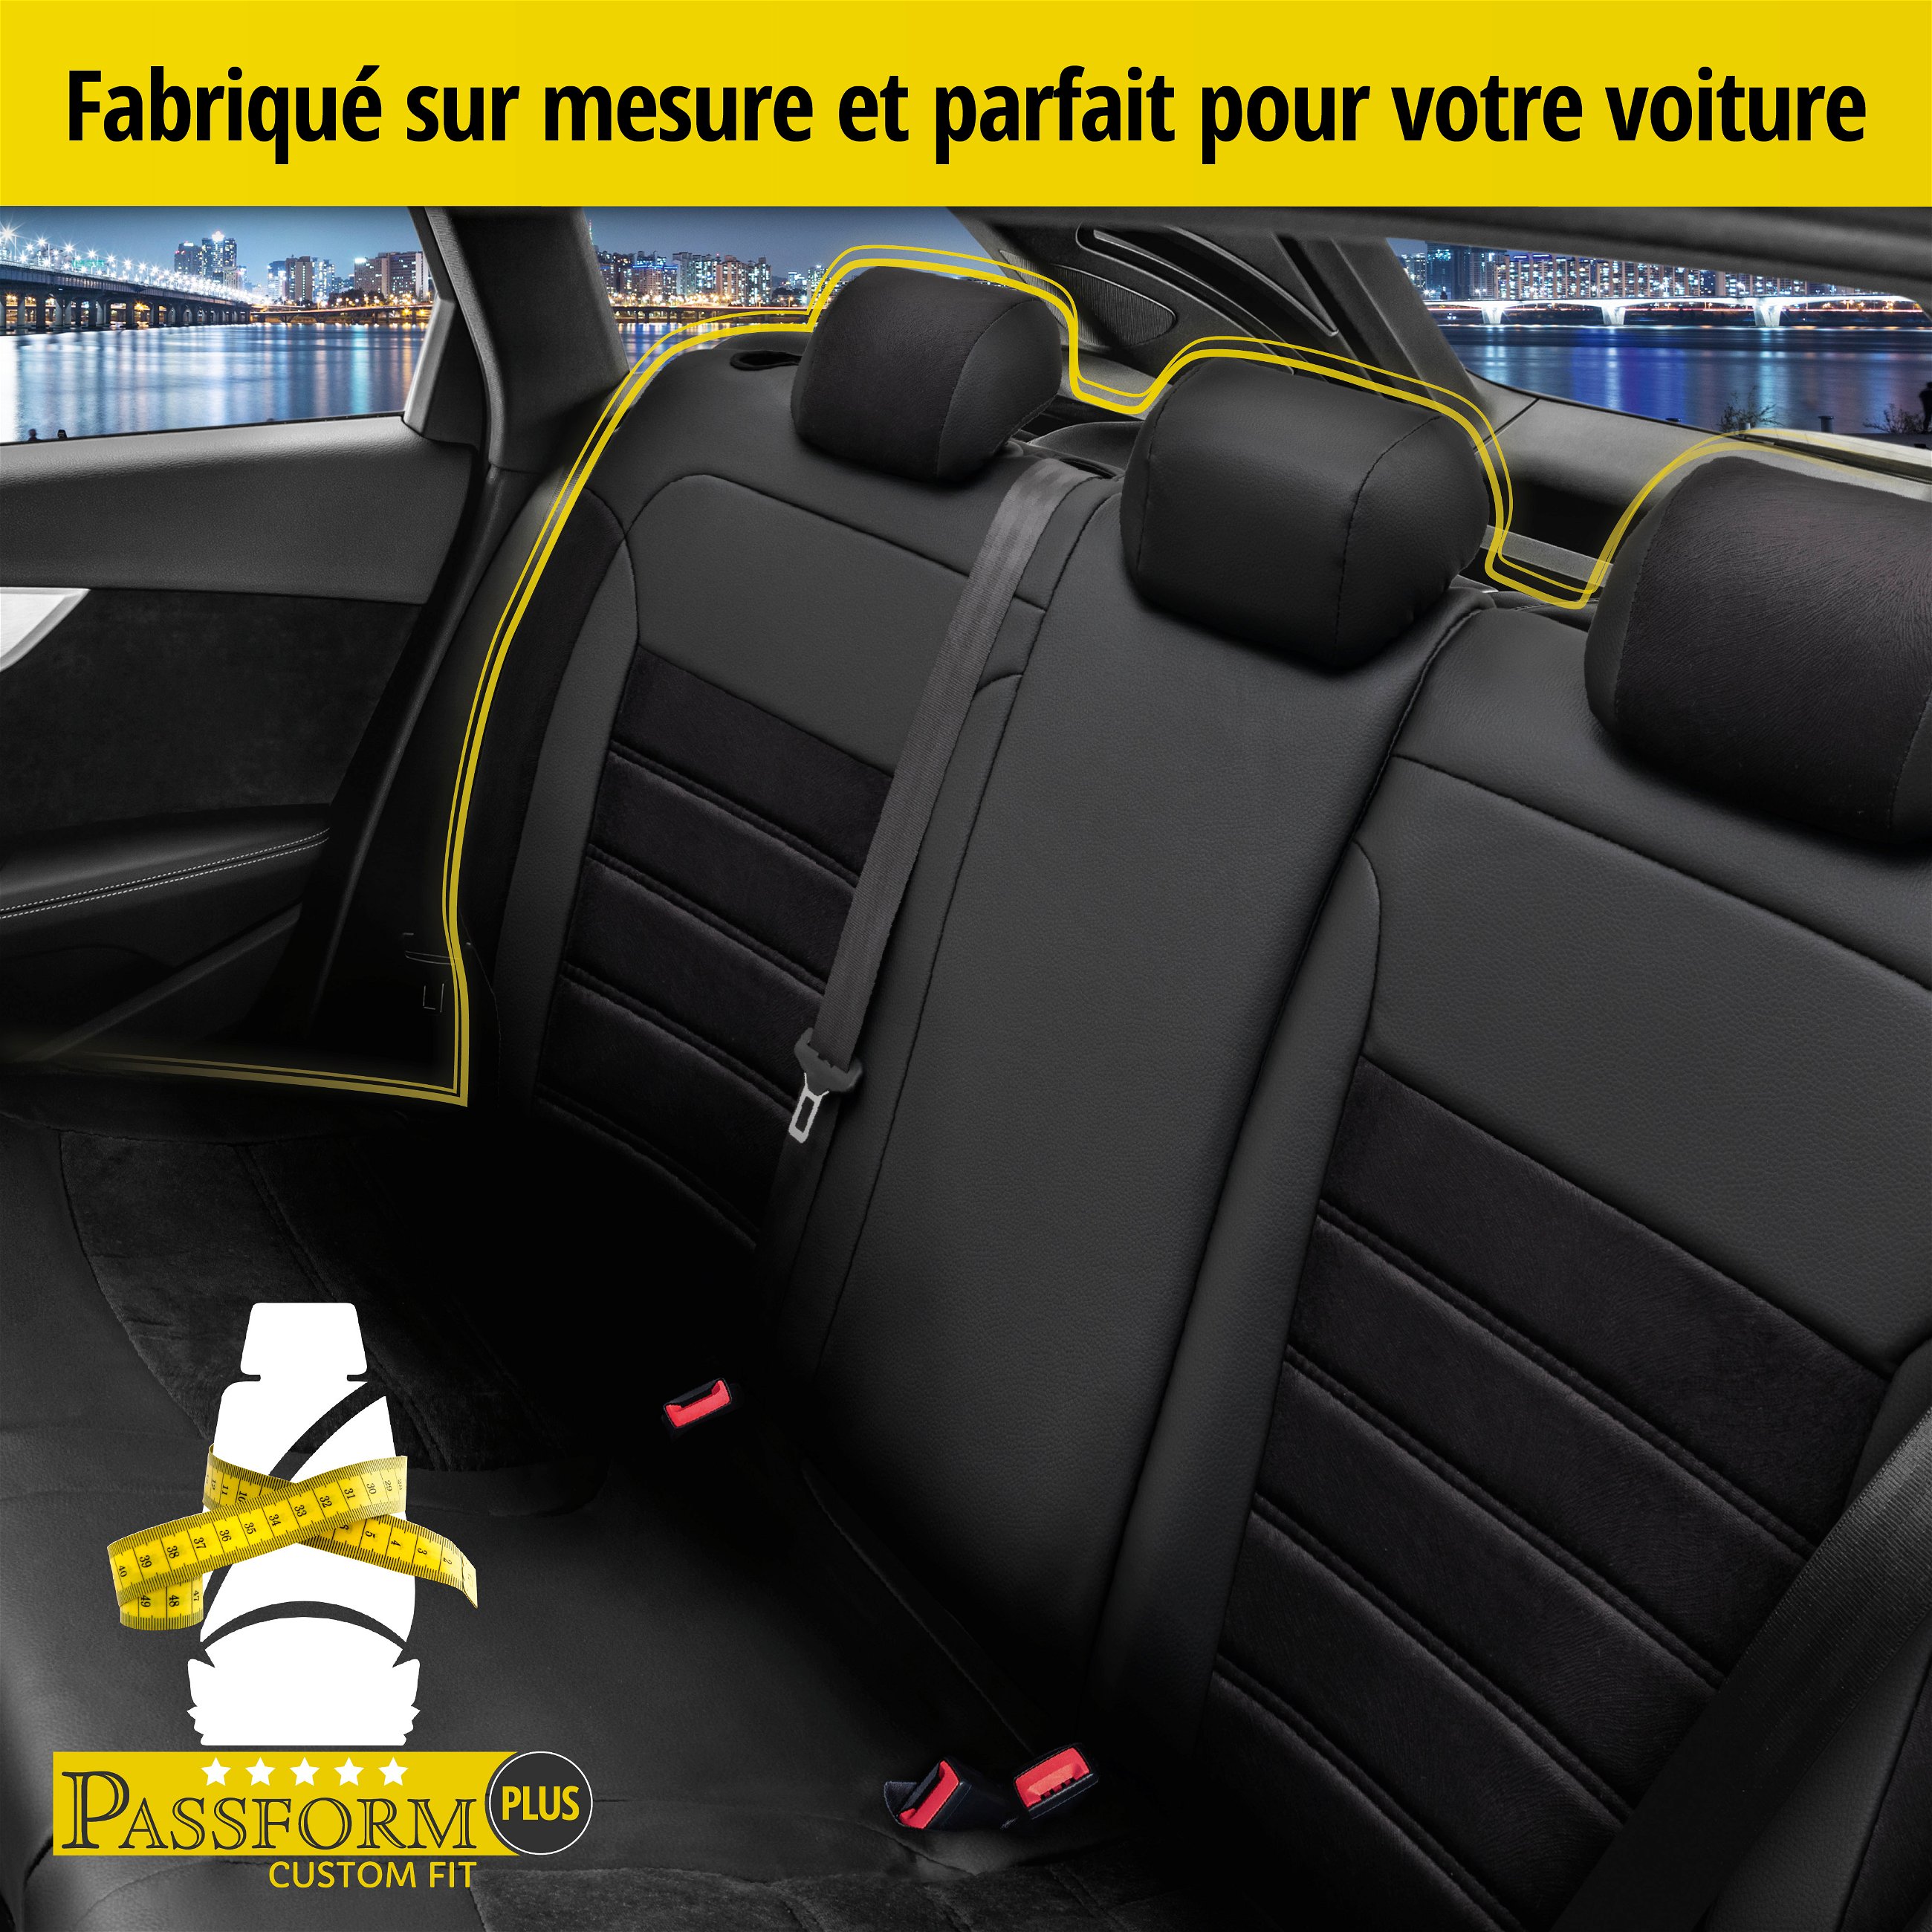 Housse de siège Bari pour Peugeot 208 I 03/2012-auj., 1 housse de siège arrière pour sièges normaux